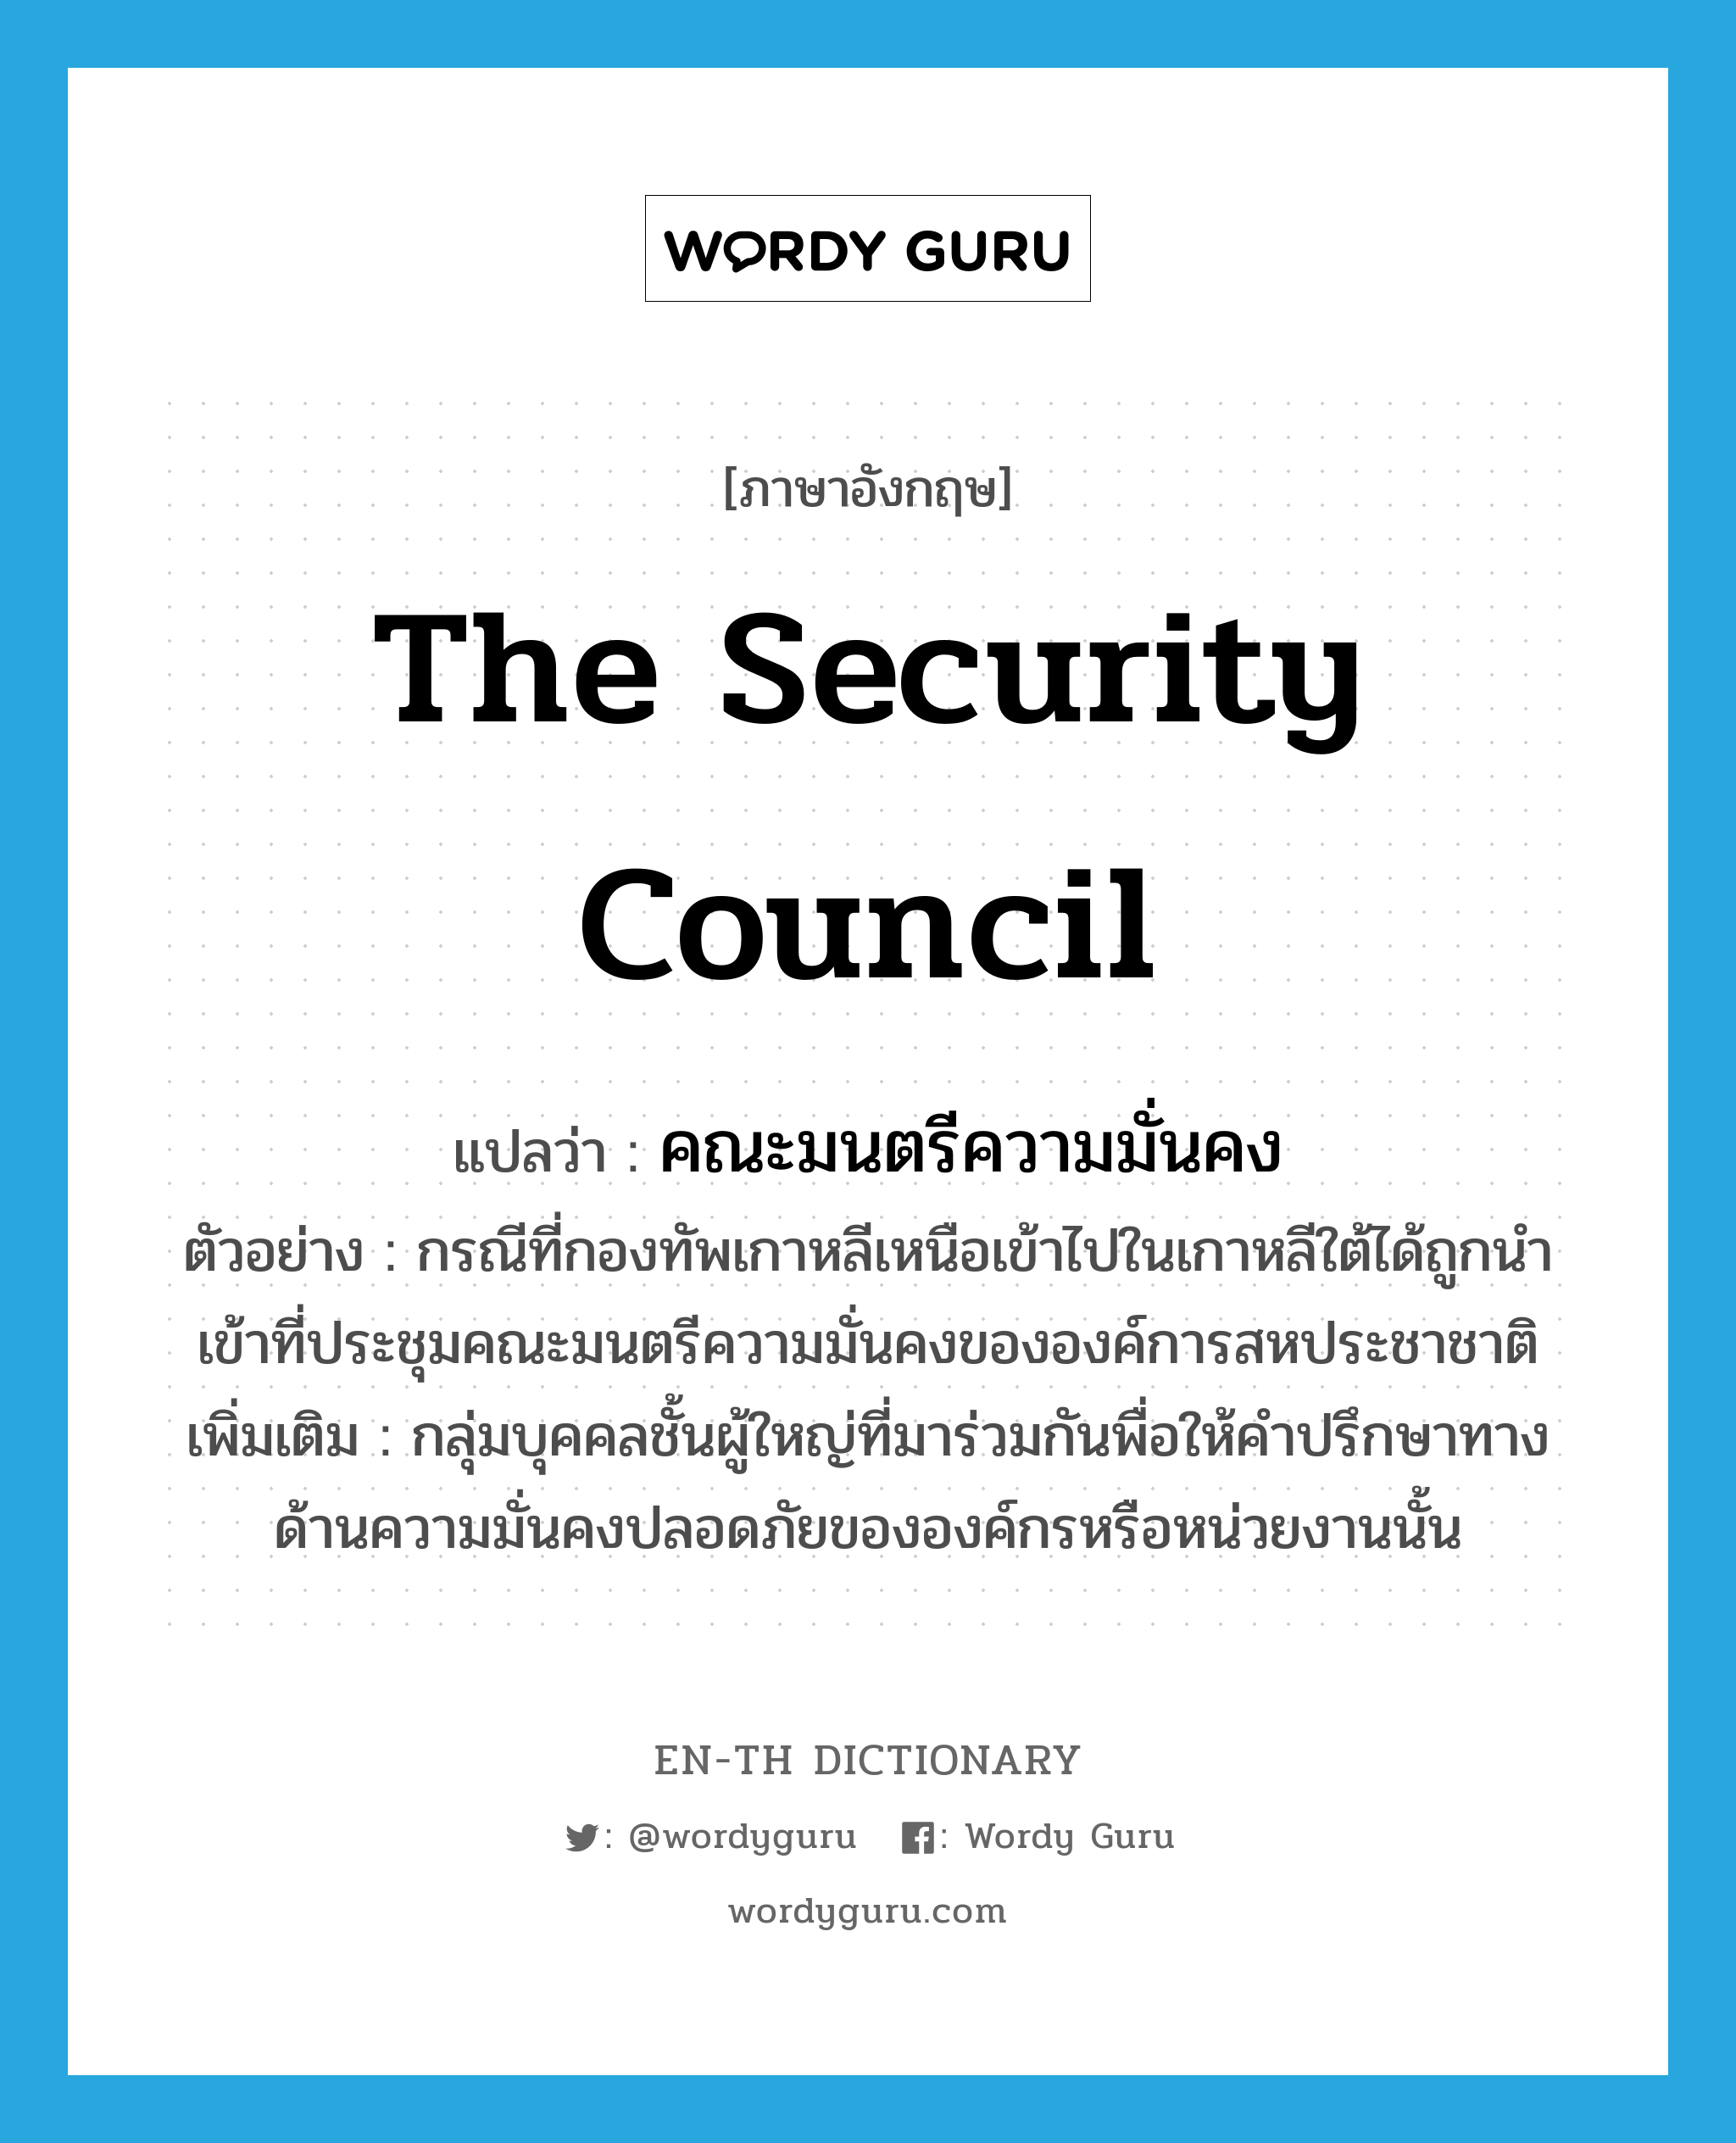 The Security Council แปลว่า?, คำศัพท์ภาษาอังกฤษ The Security Council แปลว่า คณะมนตรีความมั่นคง ประเภท N ตัวอย่าง กรณีที่กองทัพเกาหลีเหนือเข้าไปในเกาหลีใต้ได้ถูกนำเข้าที่ประชุมคณะมนตรีความมั่นคงขององค์การสหประชาชาติ เพิ่มเติม กลุ่มบุคคลชั้นผู้ใหญ่ที่มาร่วมกันพื่อให้คำปรึกษาทางด้านความมั่นคงปลอดภัยขององค์กรหรือหน่วยงานนั้น หมวด N